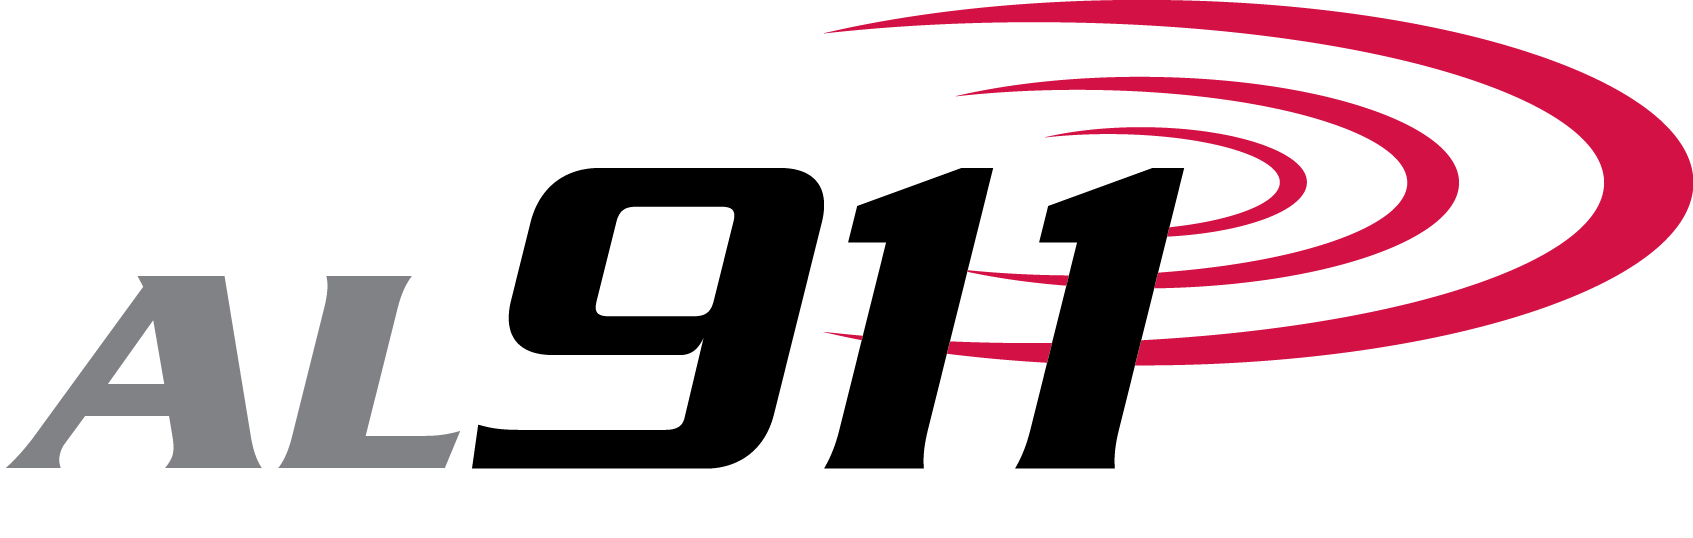 mi911_Logo-RGB